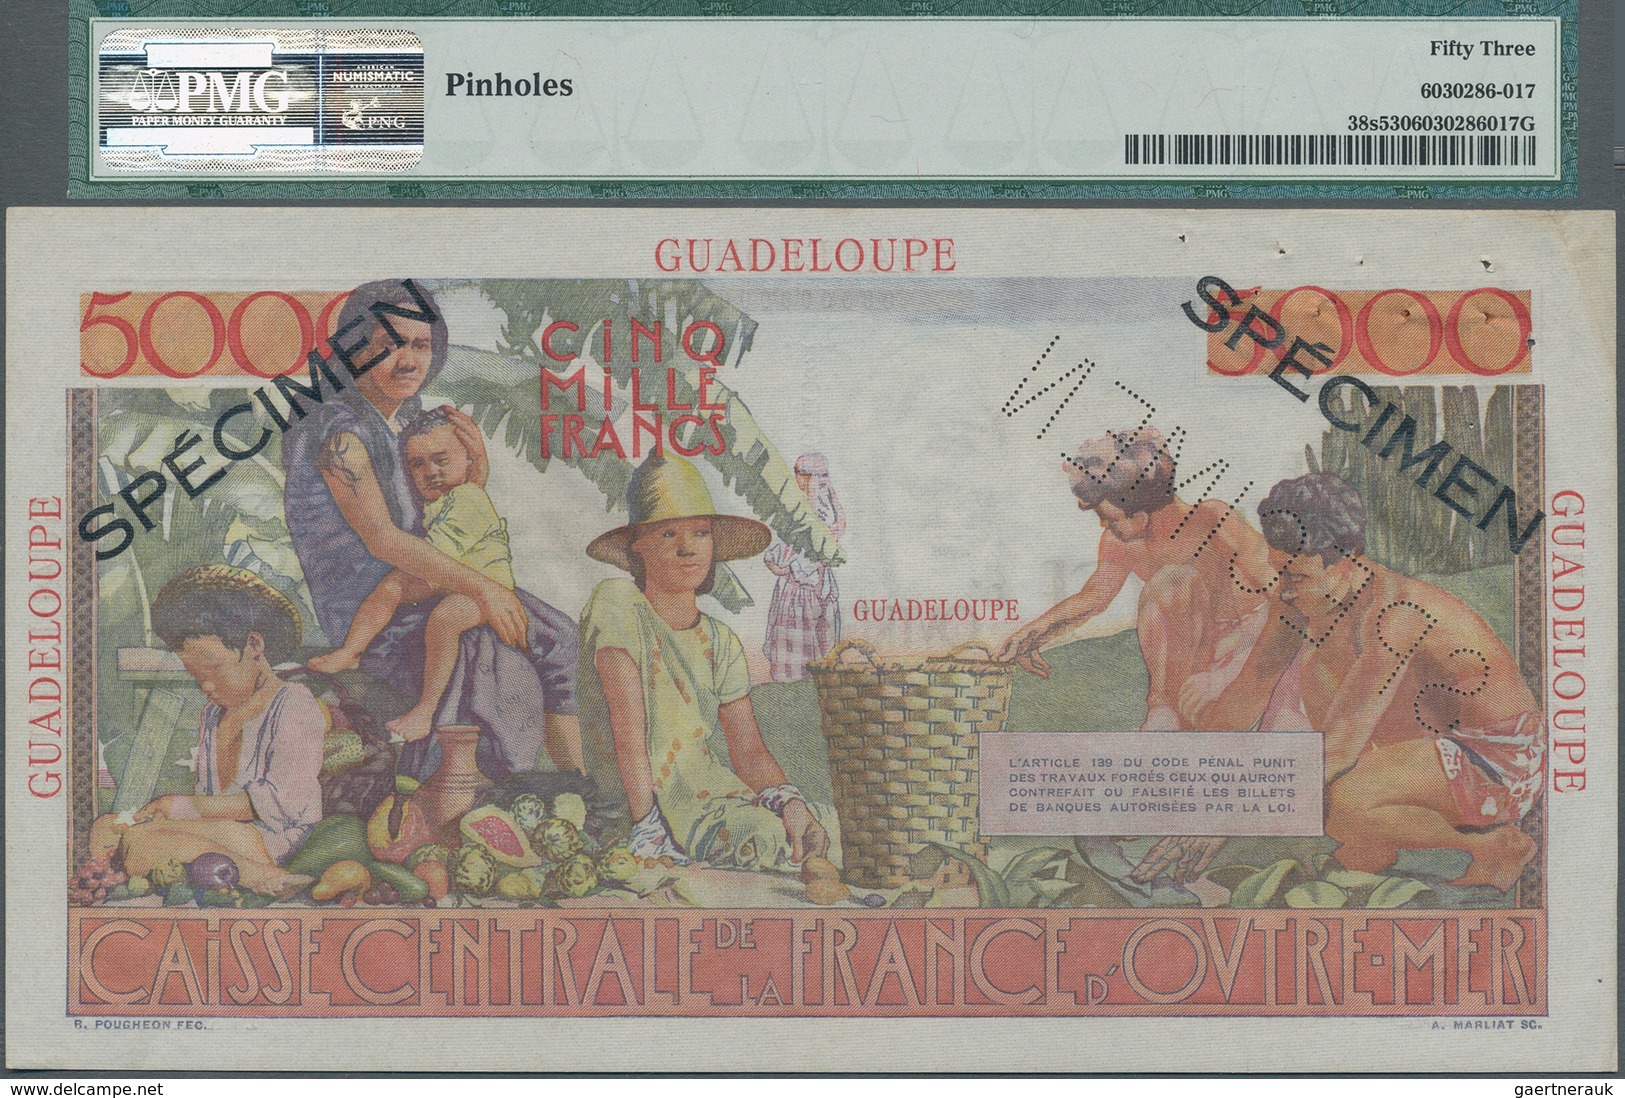 Guadeloupe: Caisse Centrale De La France D'Outre-Mer 5000 Francs ND(1952) SPECIMEN, P.38s, Tiny Dint - Other - America